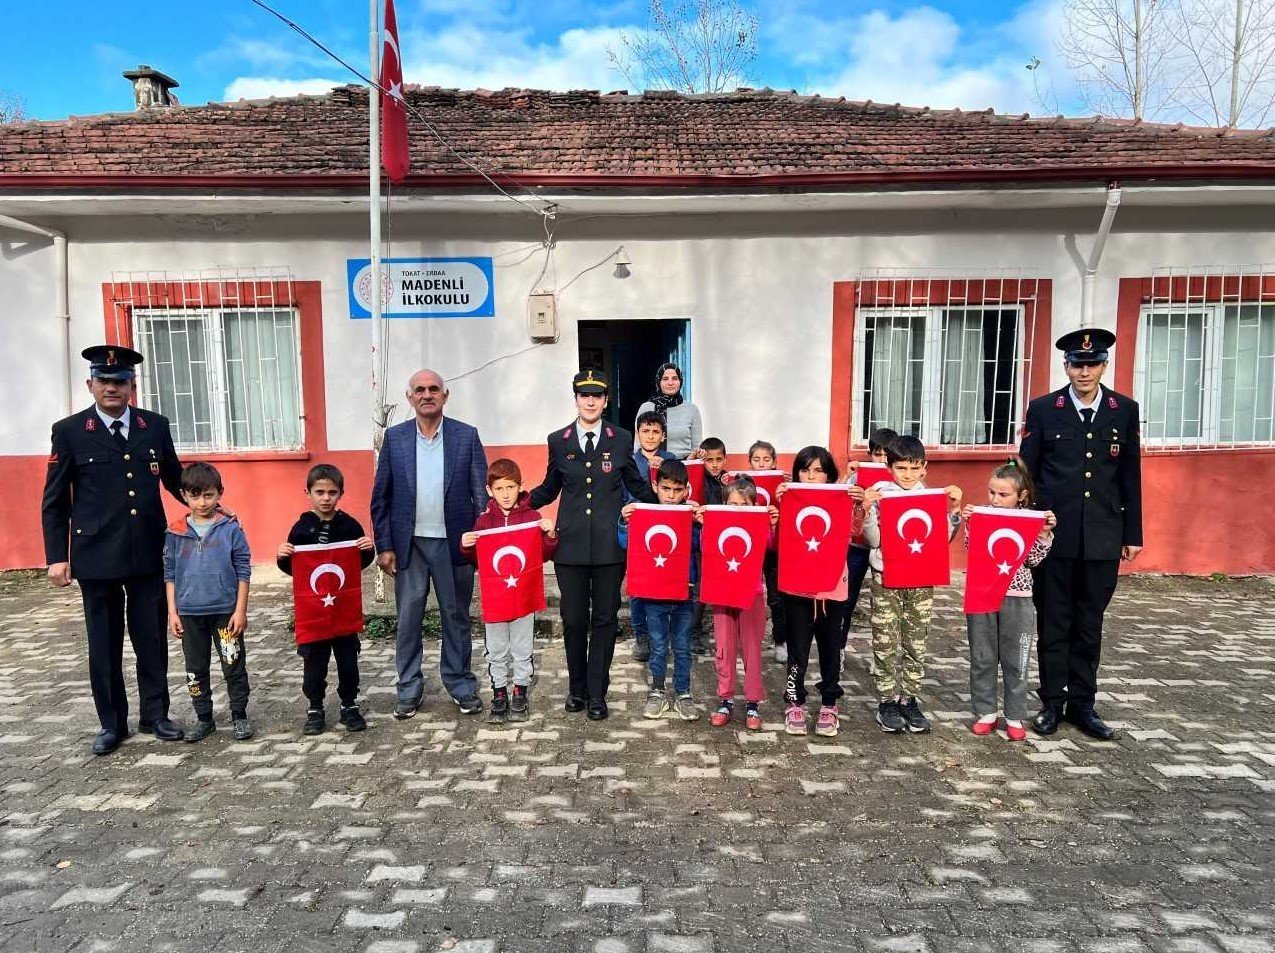 Tokat Köy Okullarında Gazi Mustafa Kemal Atatürk Anıldı